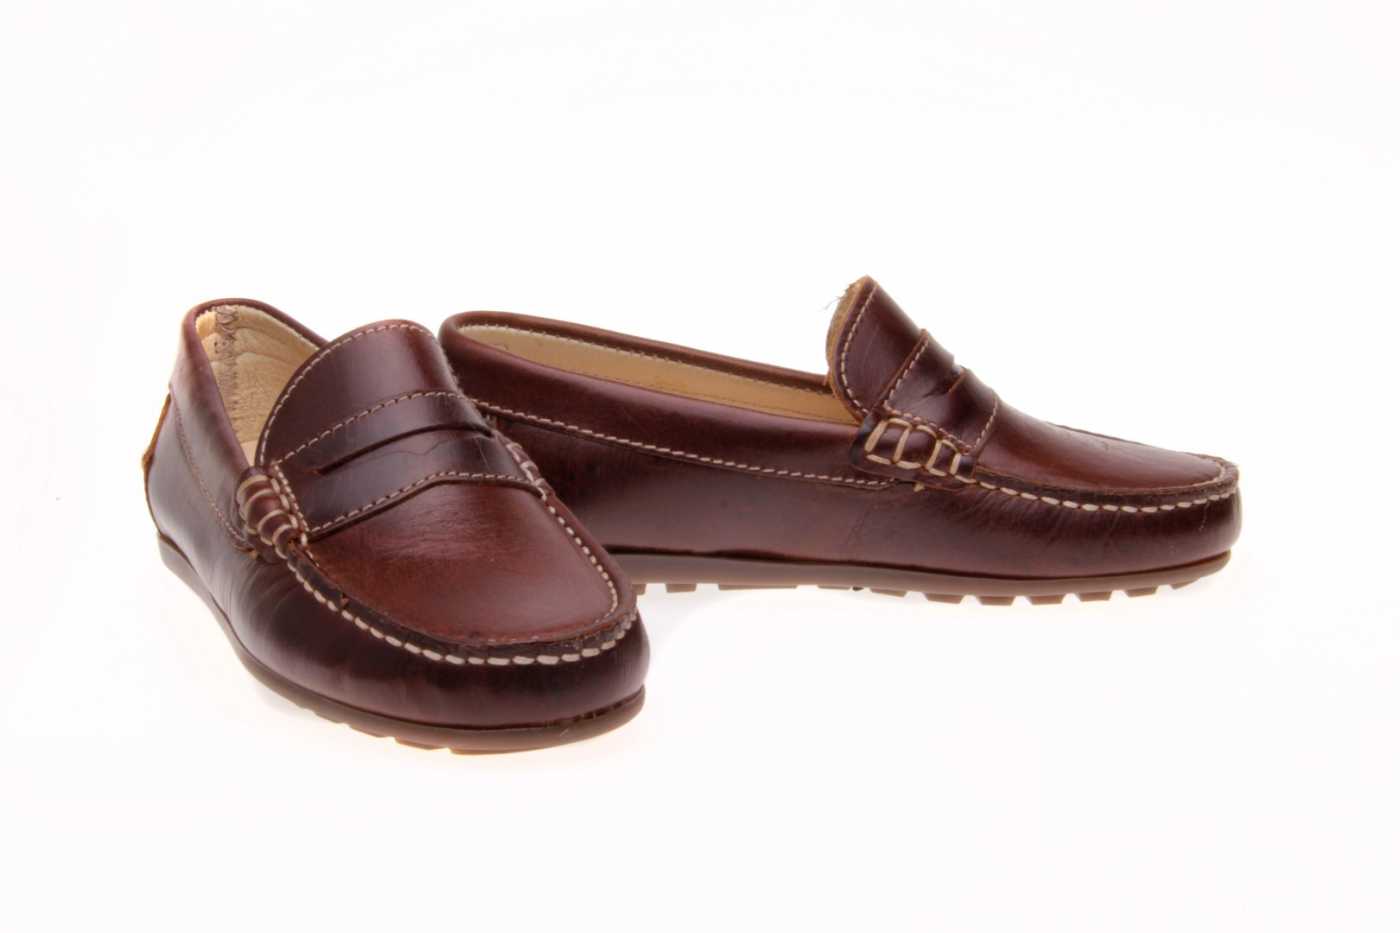 zapato KIDS para JOVEN NIÑO estilo MOCASIN color MARRON PIEL